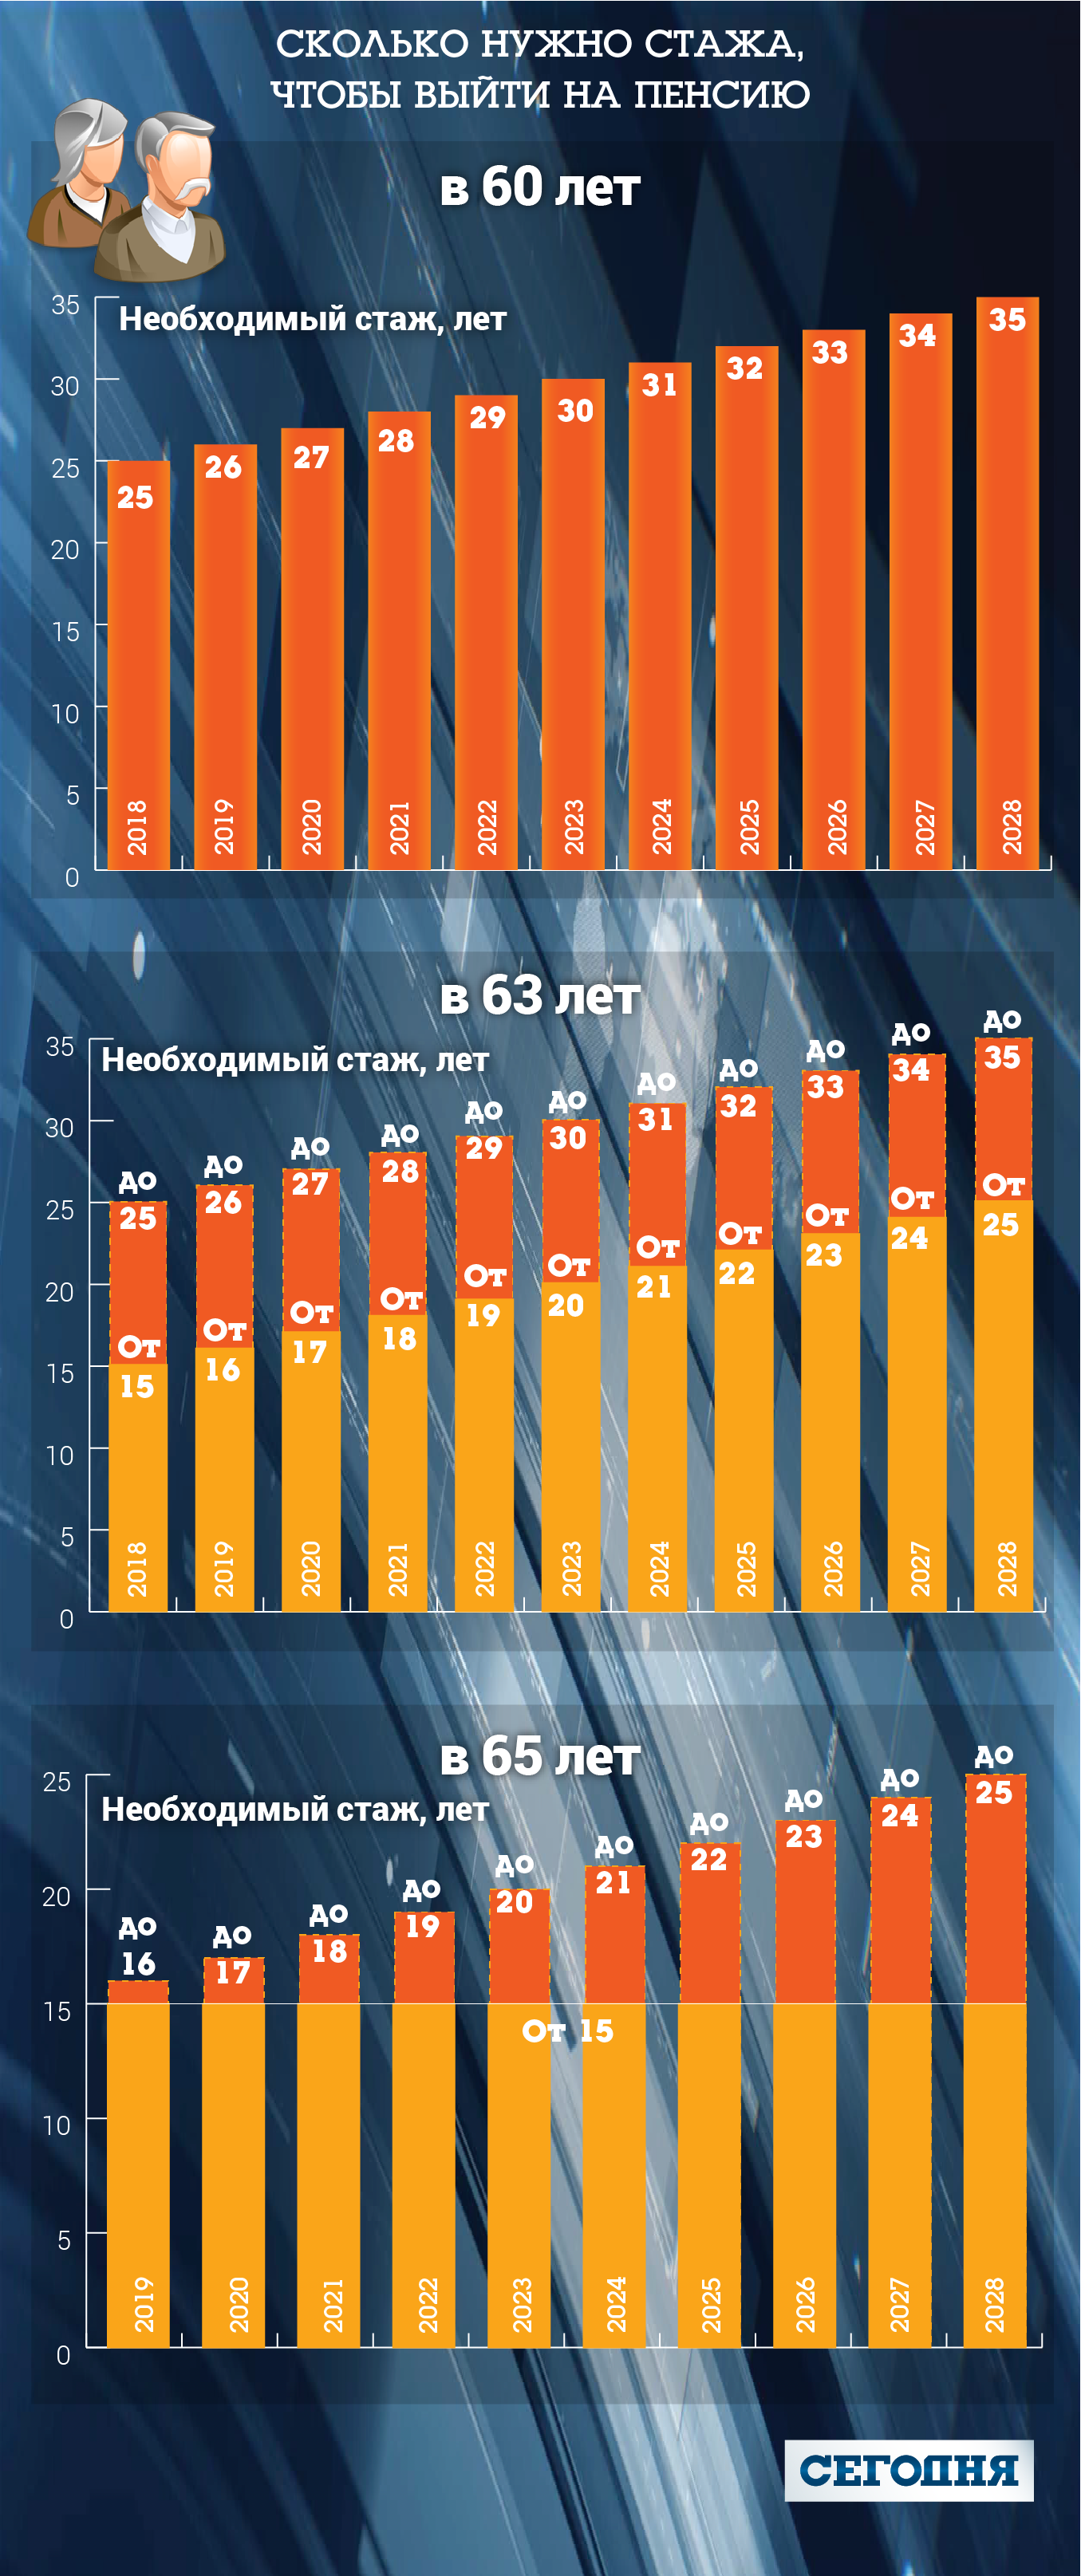 Все нововведения пенсионной реформы в Украине: подробности. Кабмин украины одобрил законопроект о пенсионной реформе